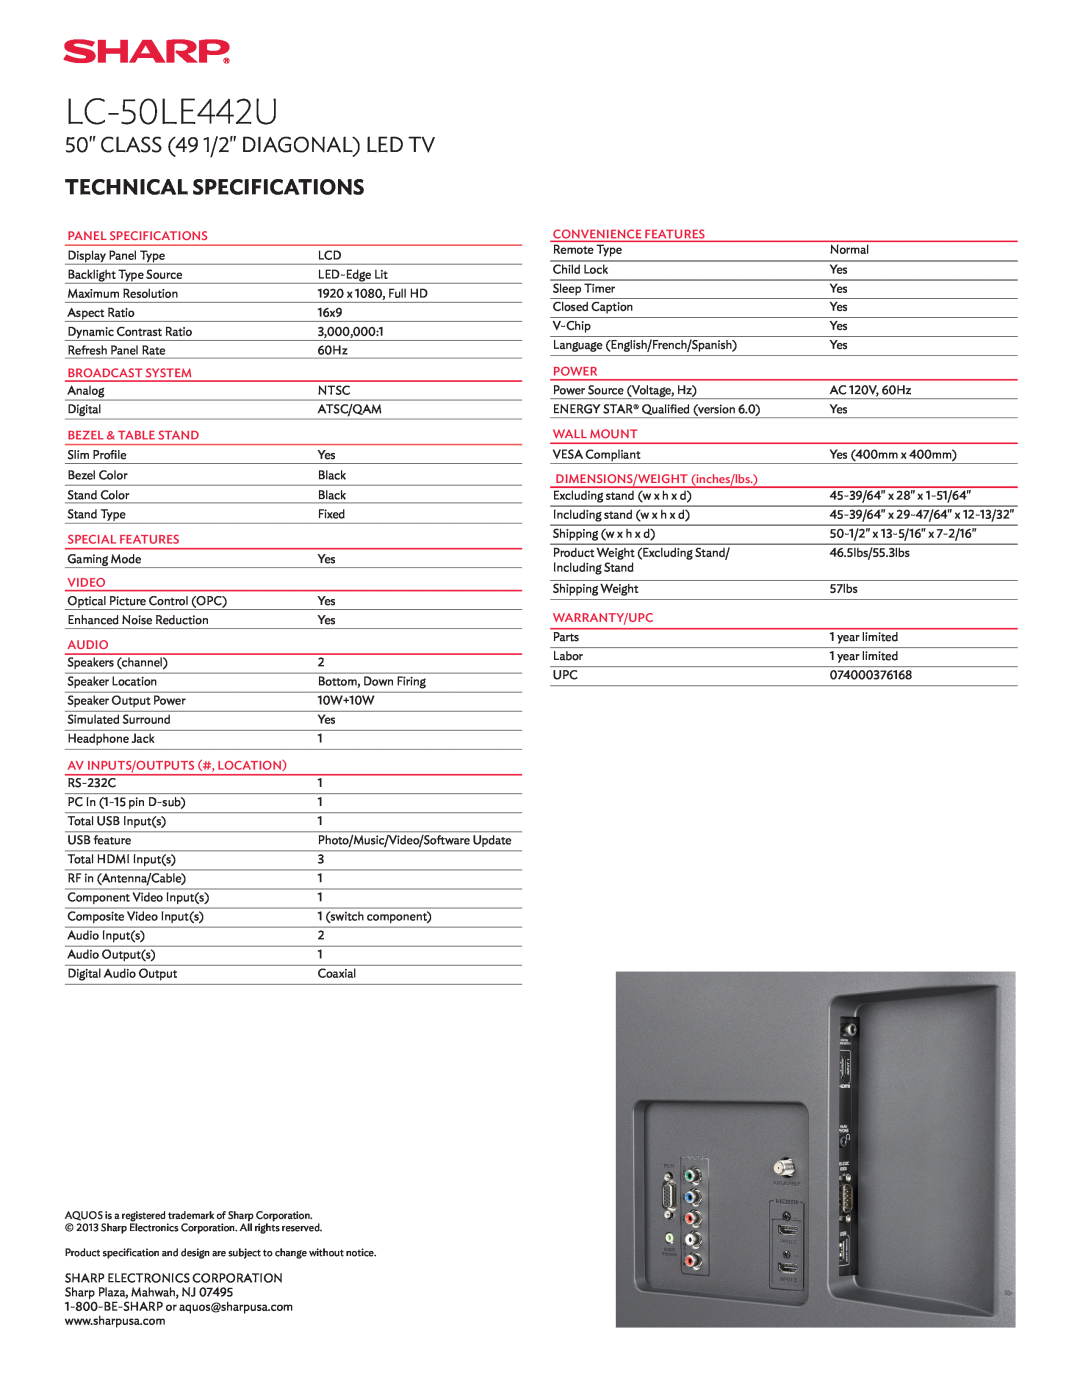 Sharp LC50LE442U manual LC-50LE442U, CLASS 49 1/2 DIAGONAL LED TV, Technical Specifications 